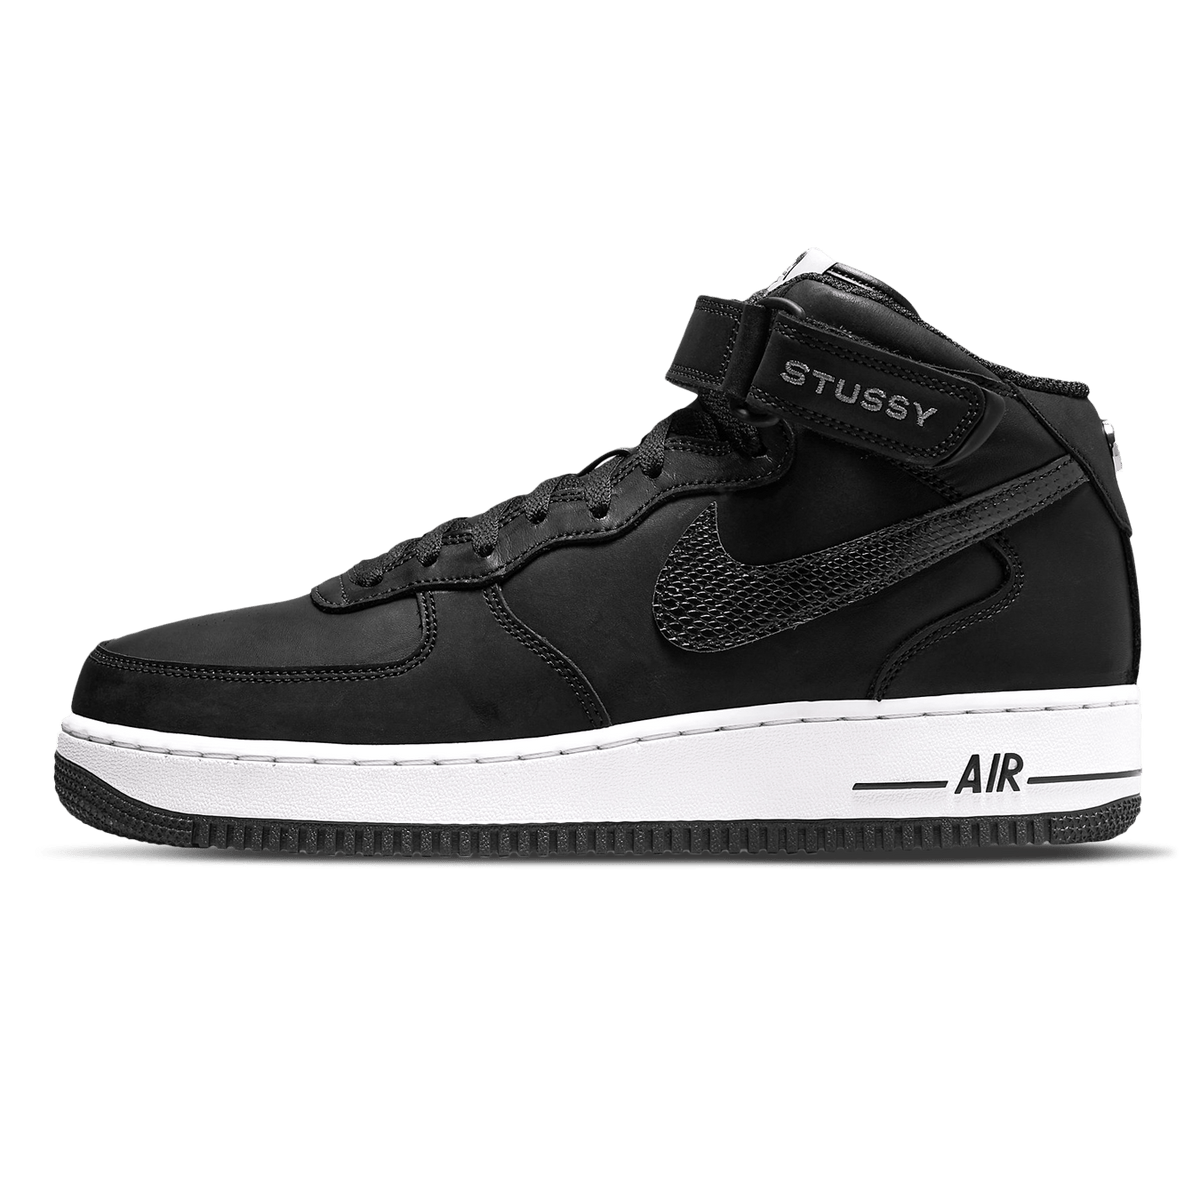 Nike Uses Air Force 1 Mid Stussy 'Black White' - UrlfreezeShops